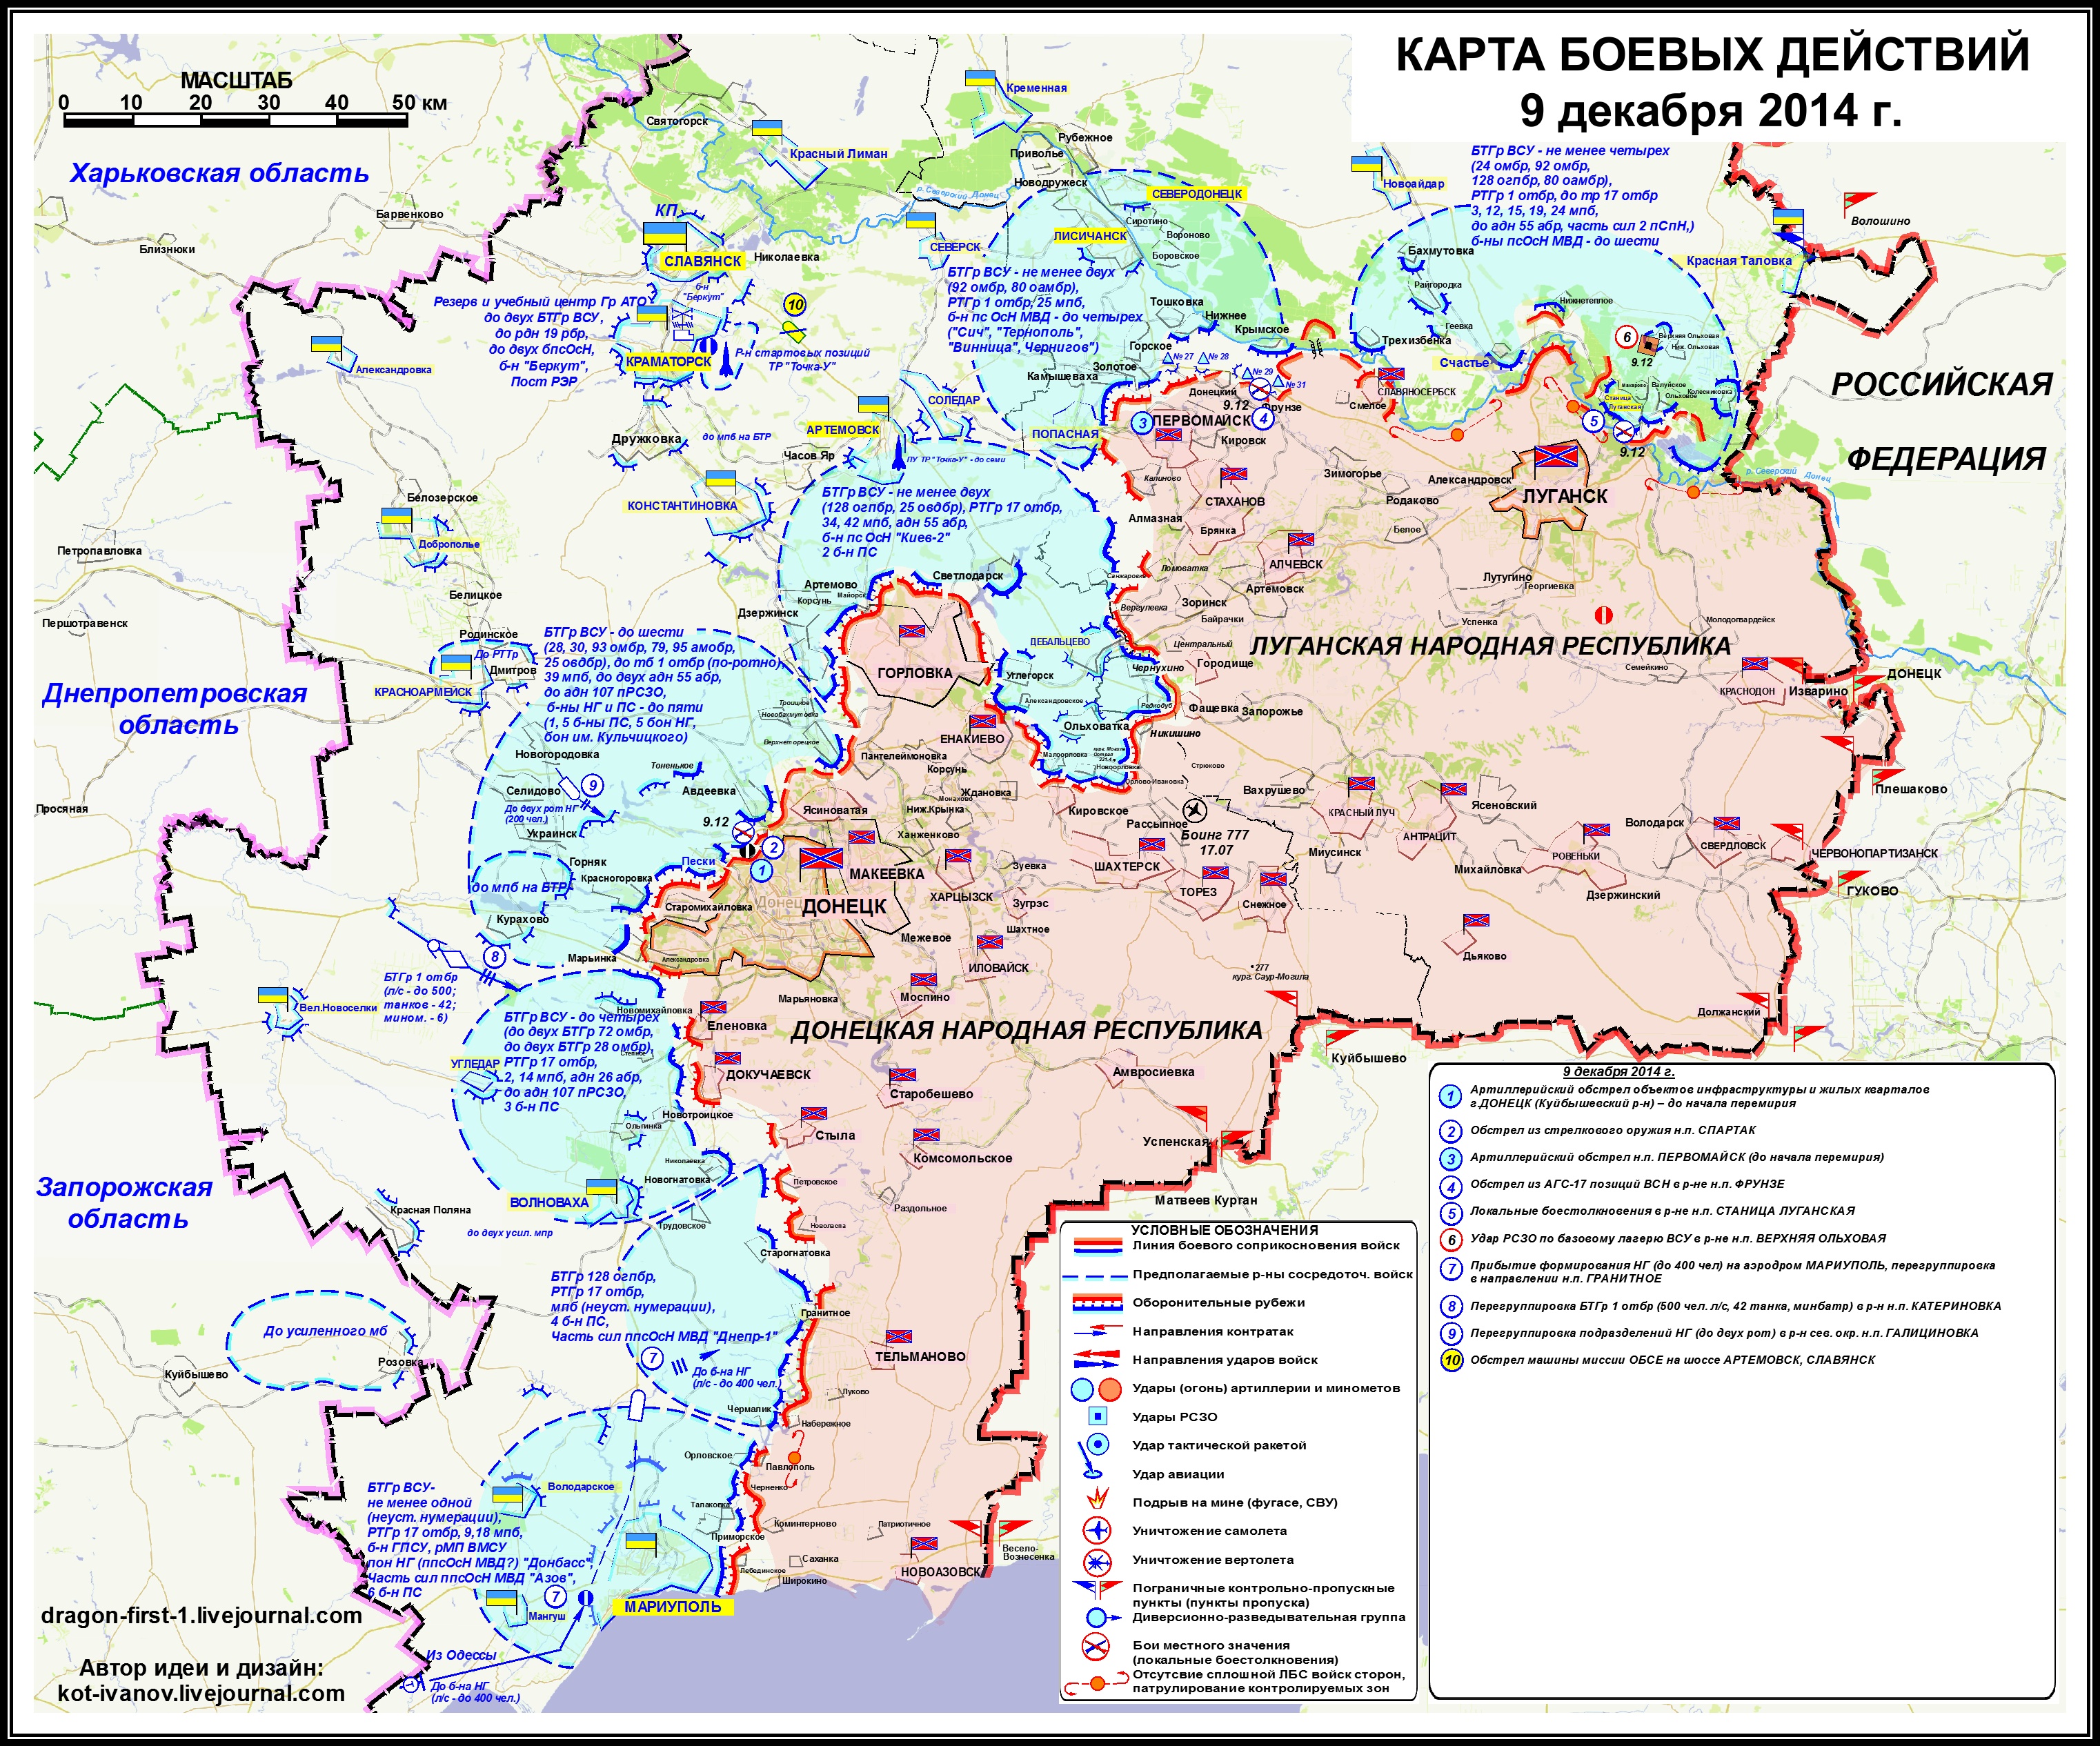 Карта боевых действий в Новороссии  9 декабря